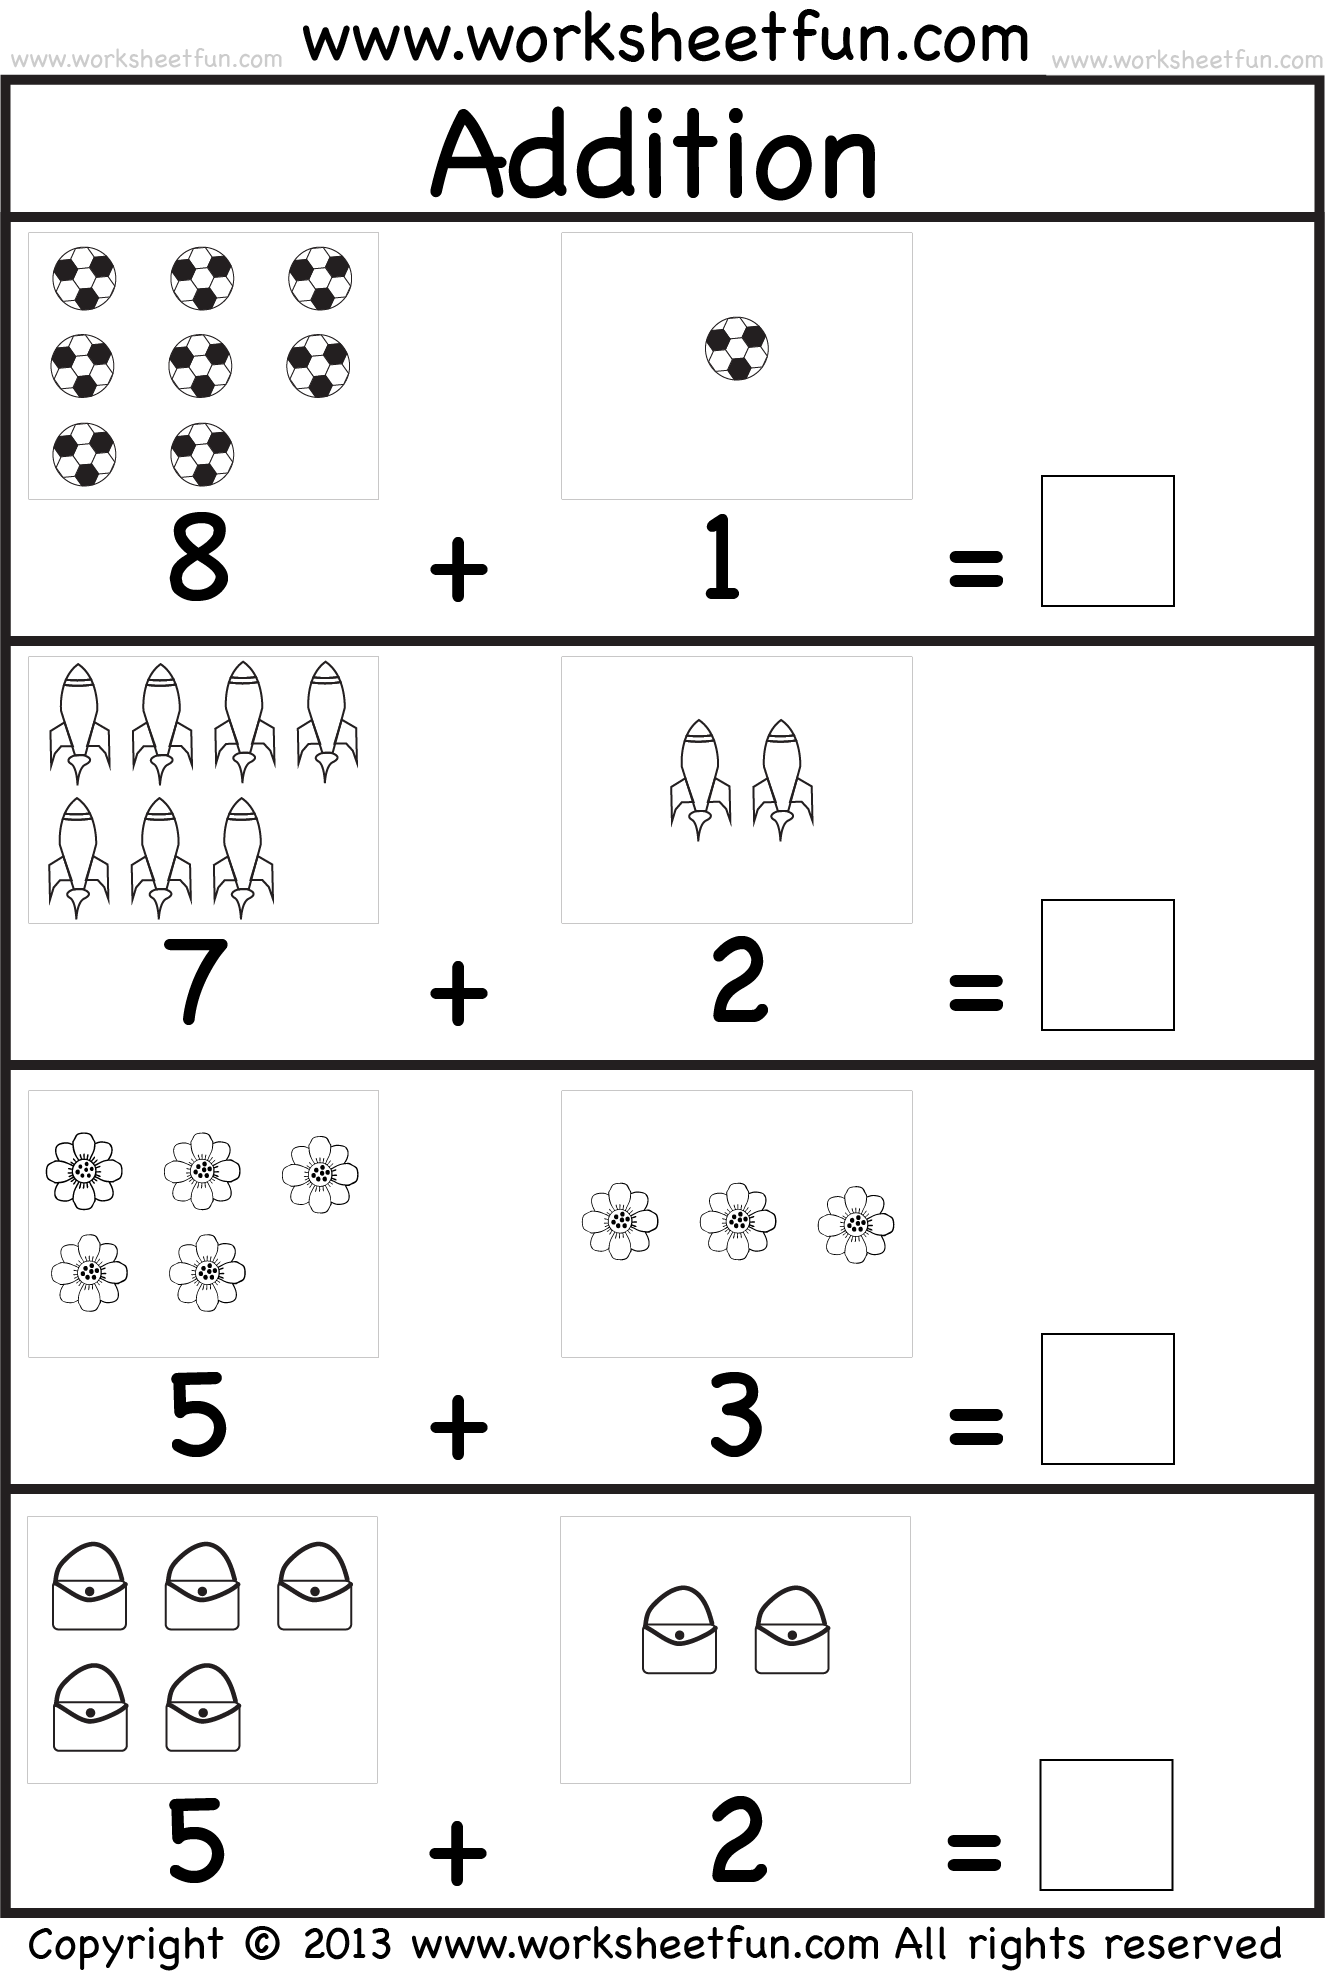 Addition worksheets for kindergarten with number line